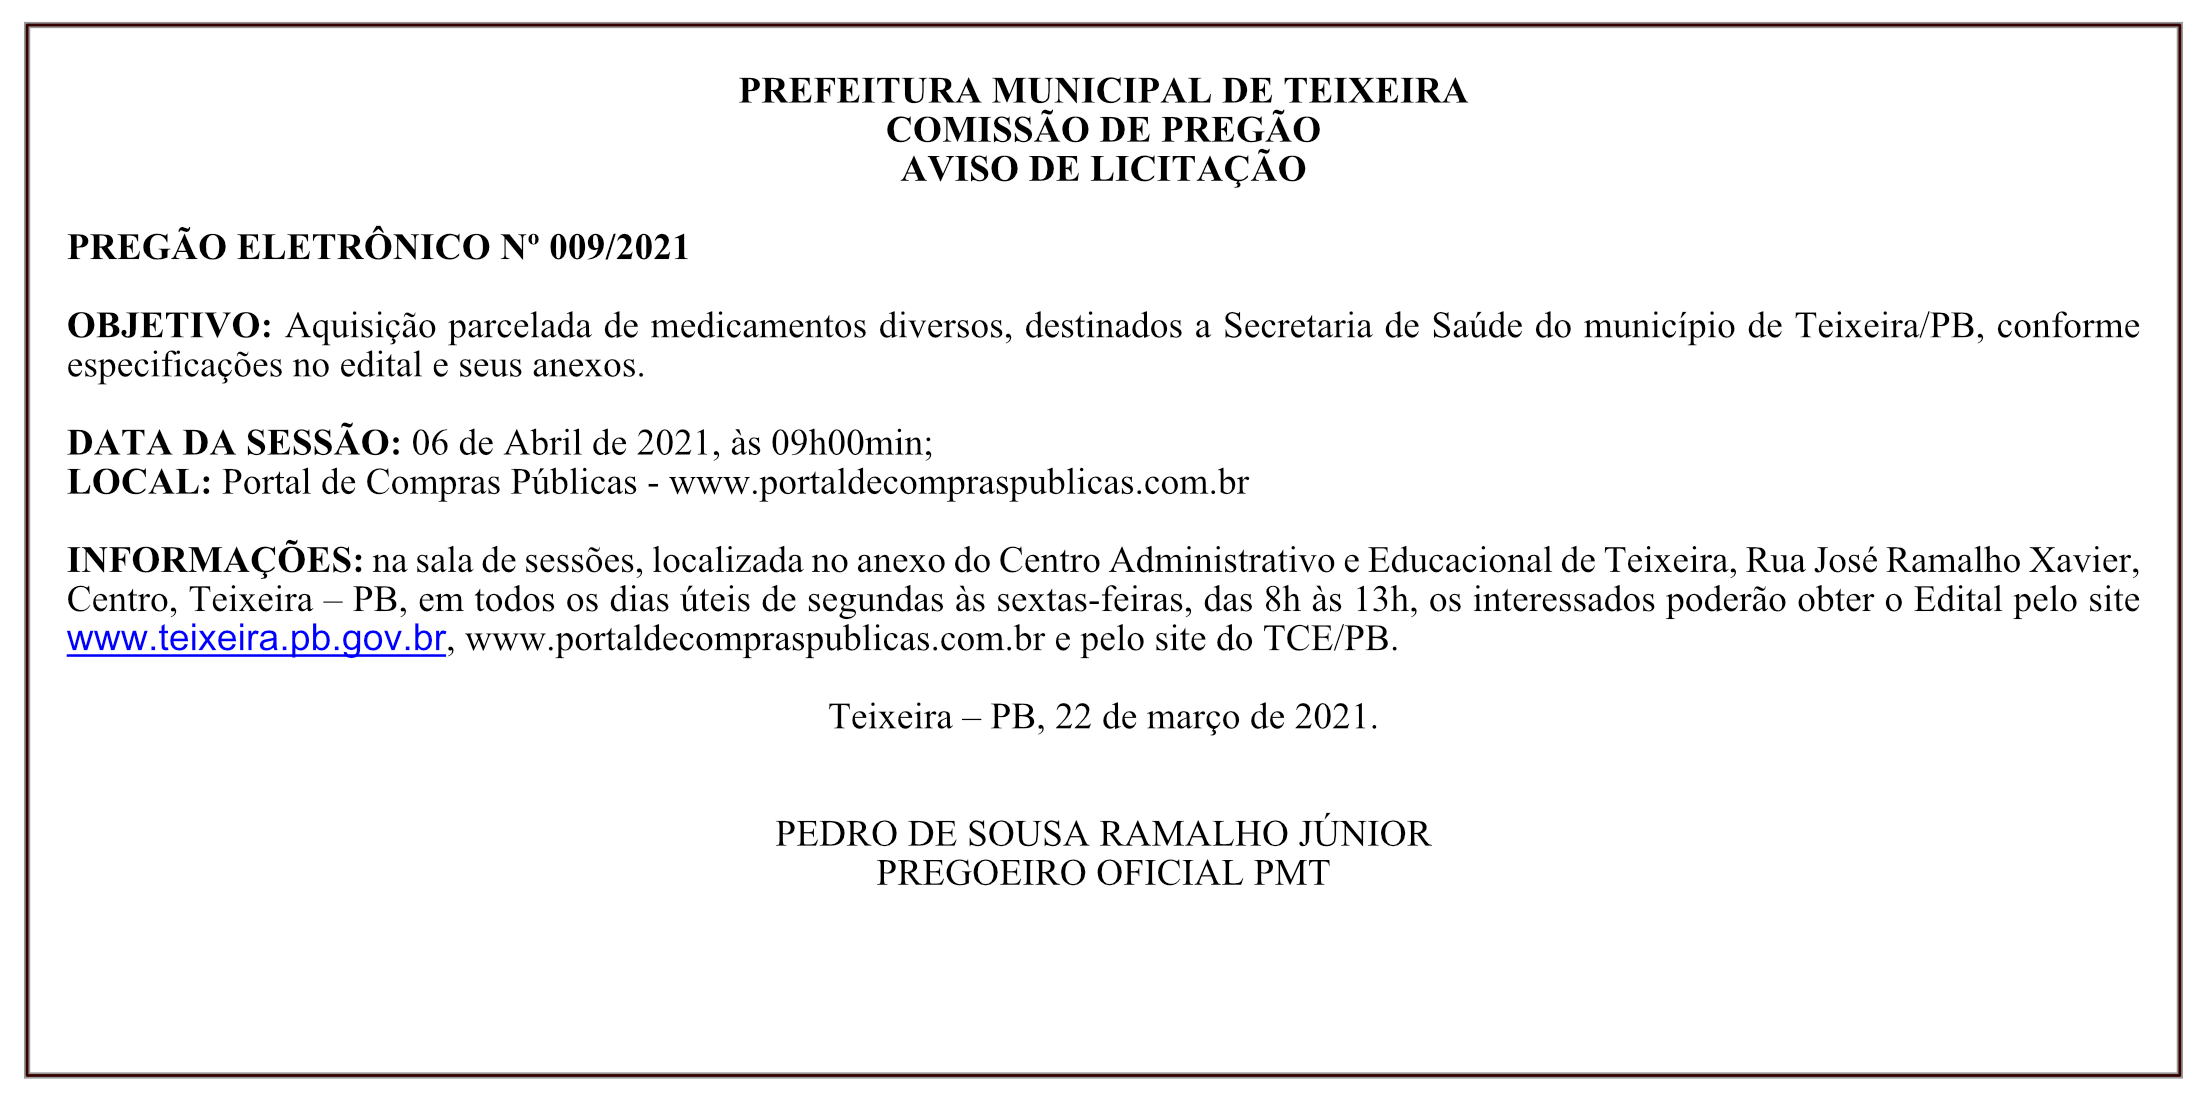 PREFEITURA MUNICIPAL DE TEIXEIRA – COMISSÃO DE PREGÃO – AVISO DE LICITAÇÃO – PREGÃO ELETRÔNICO Nº 009/2021